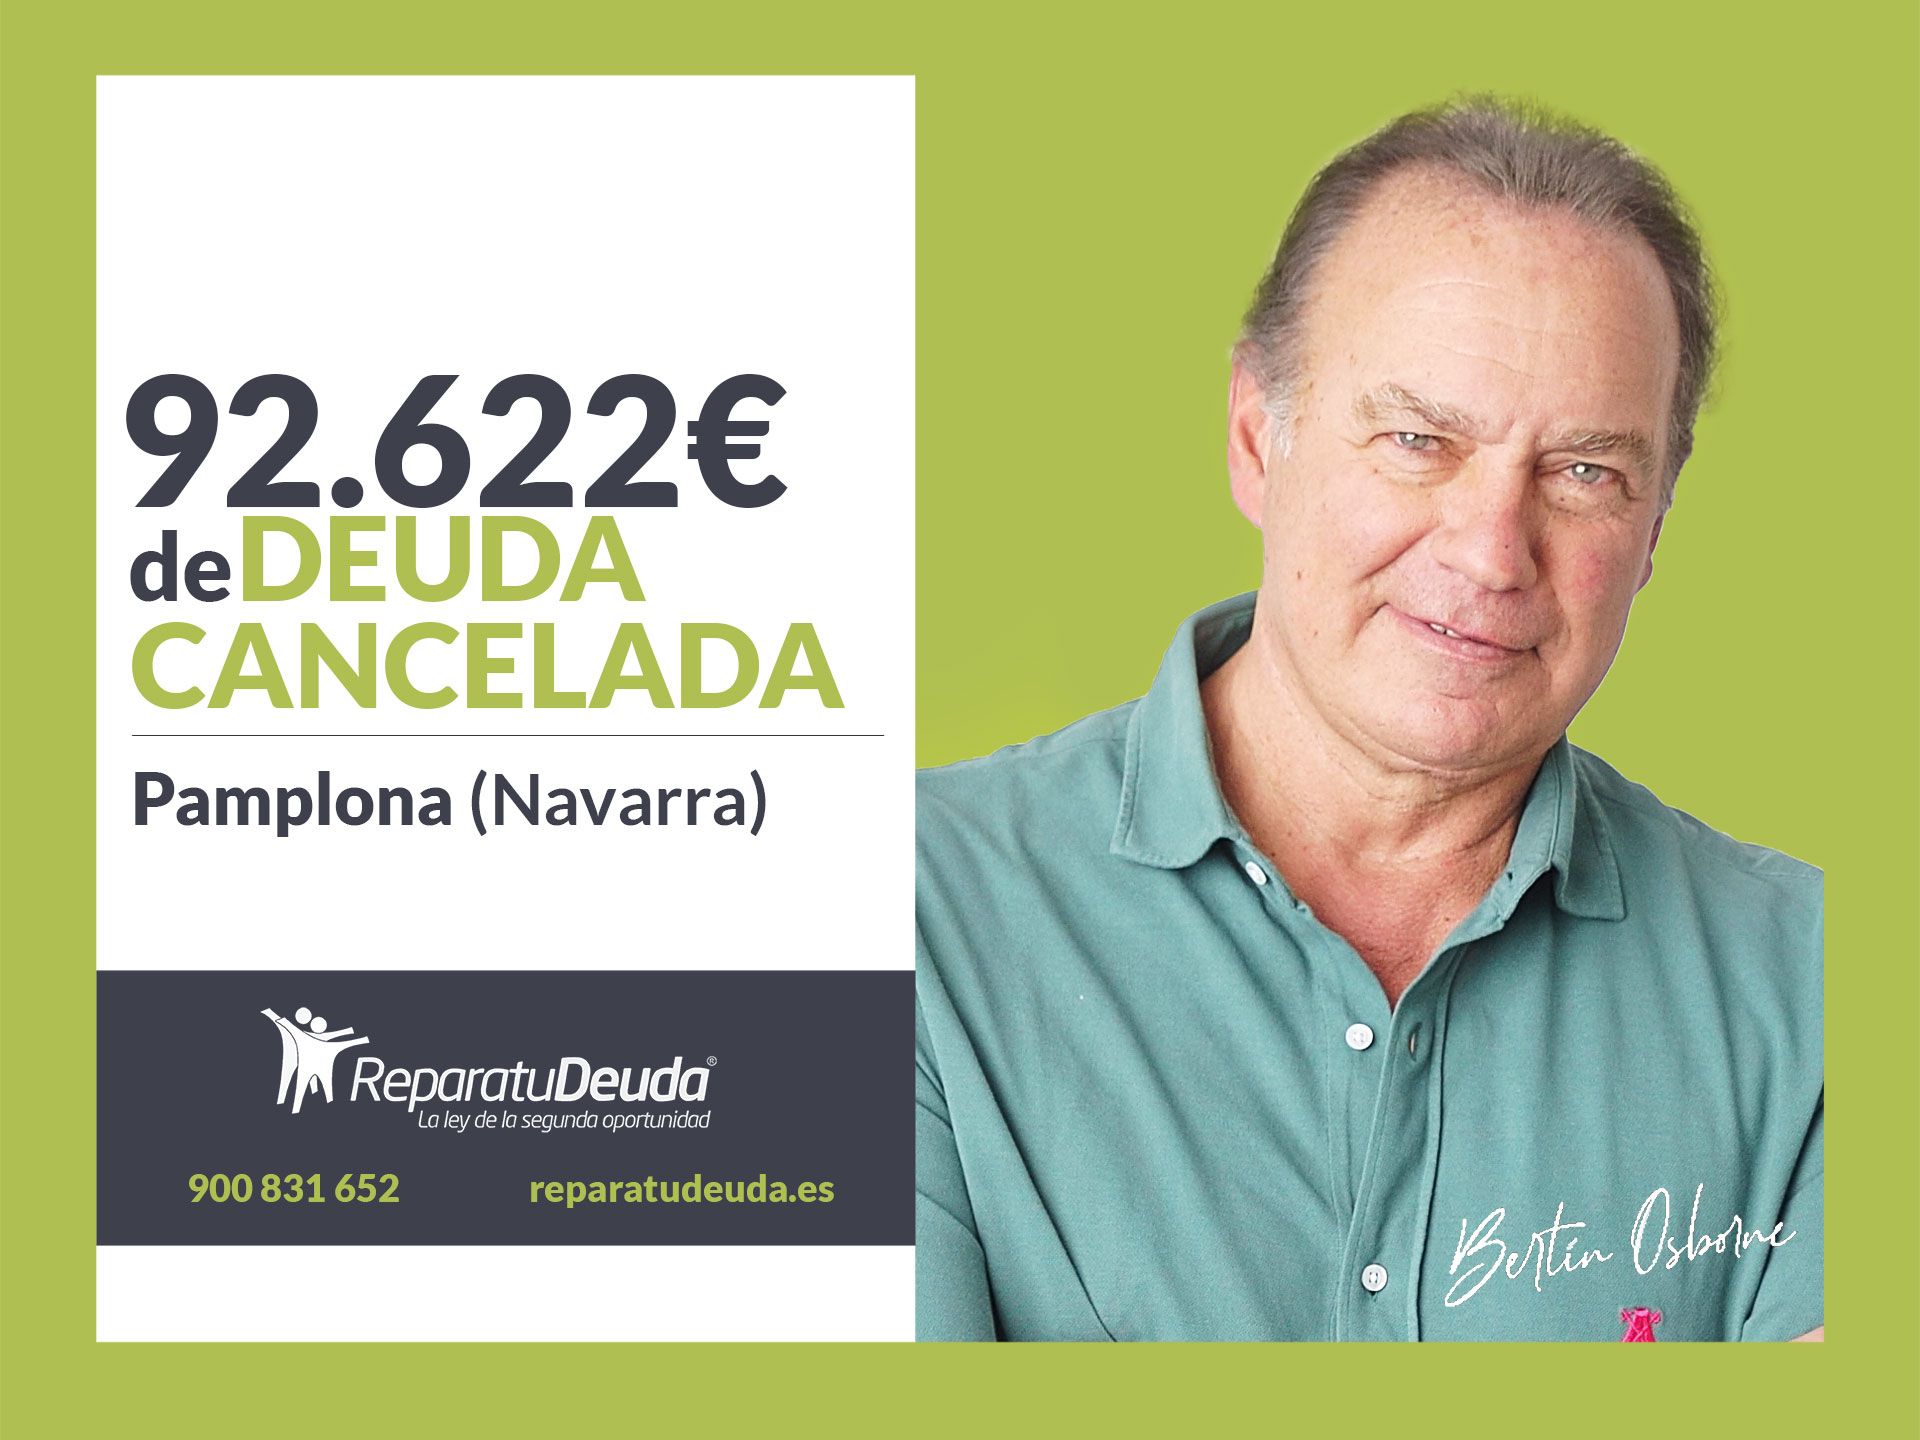 Repara tu Deuda Abogados cancela 92.622? en Pamplona (Navarra) con la Ley de Segunda Oportunidad